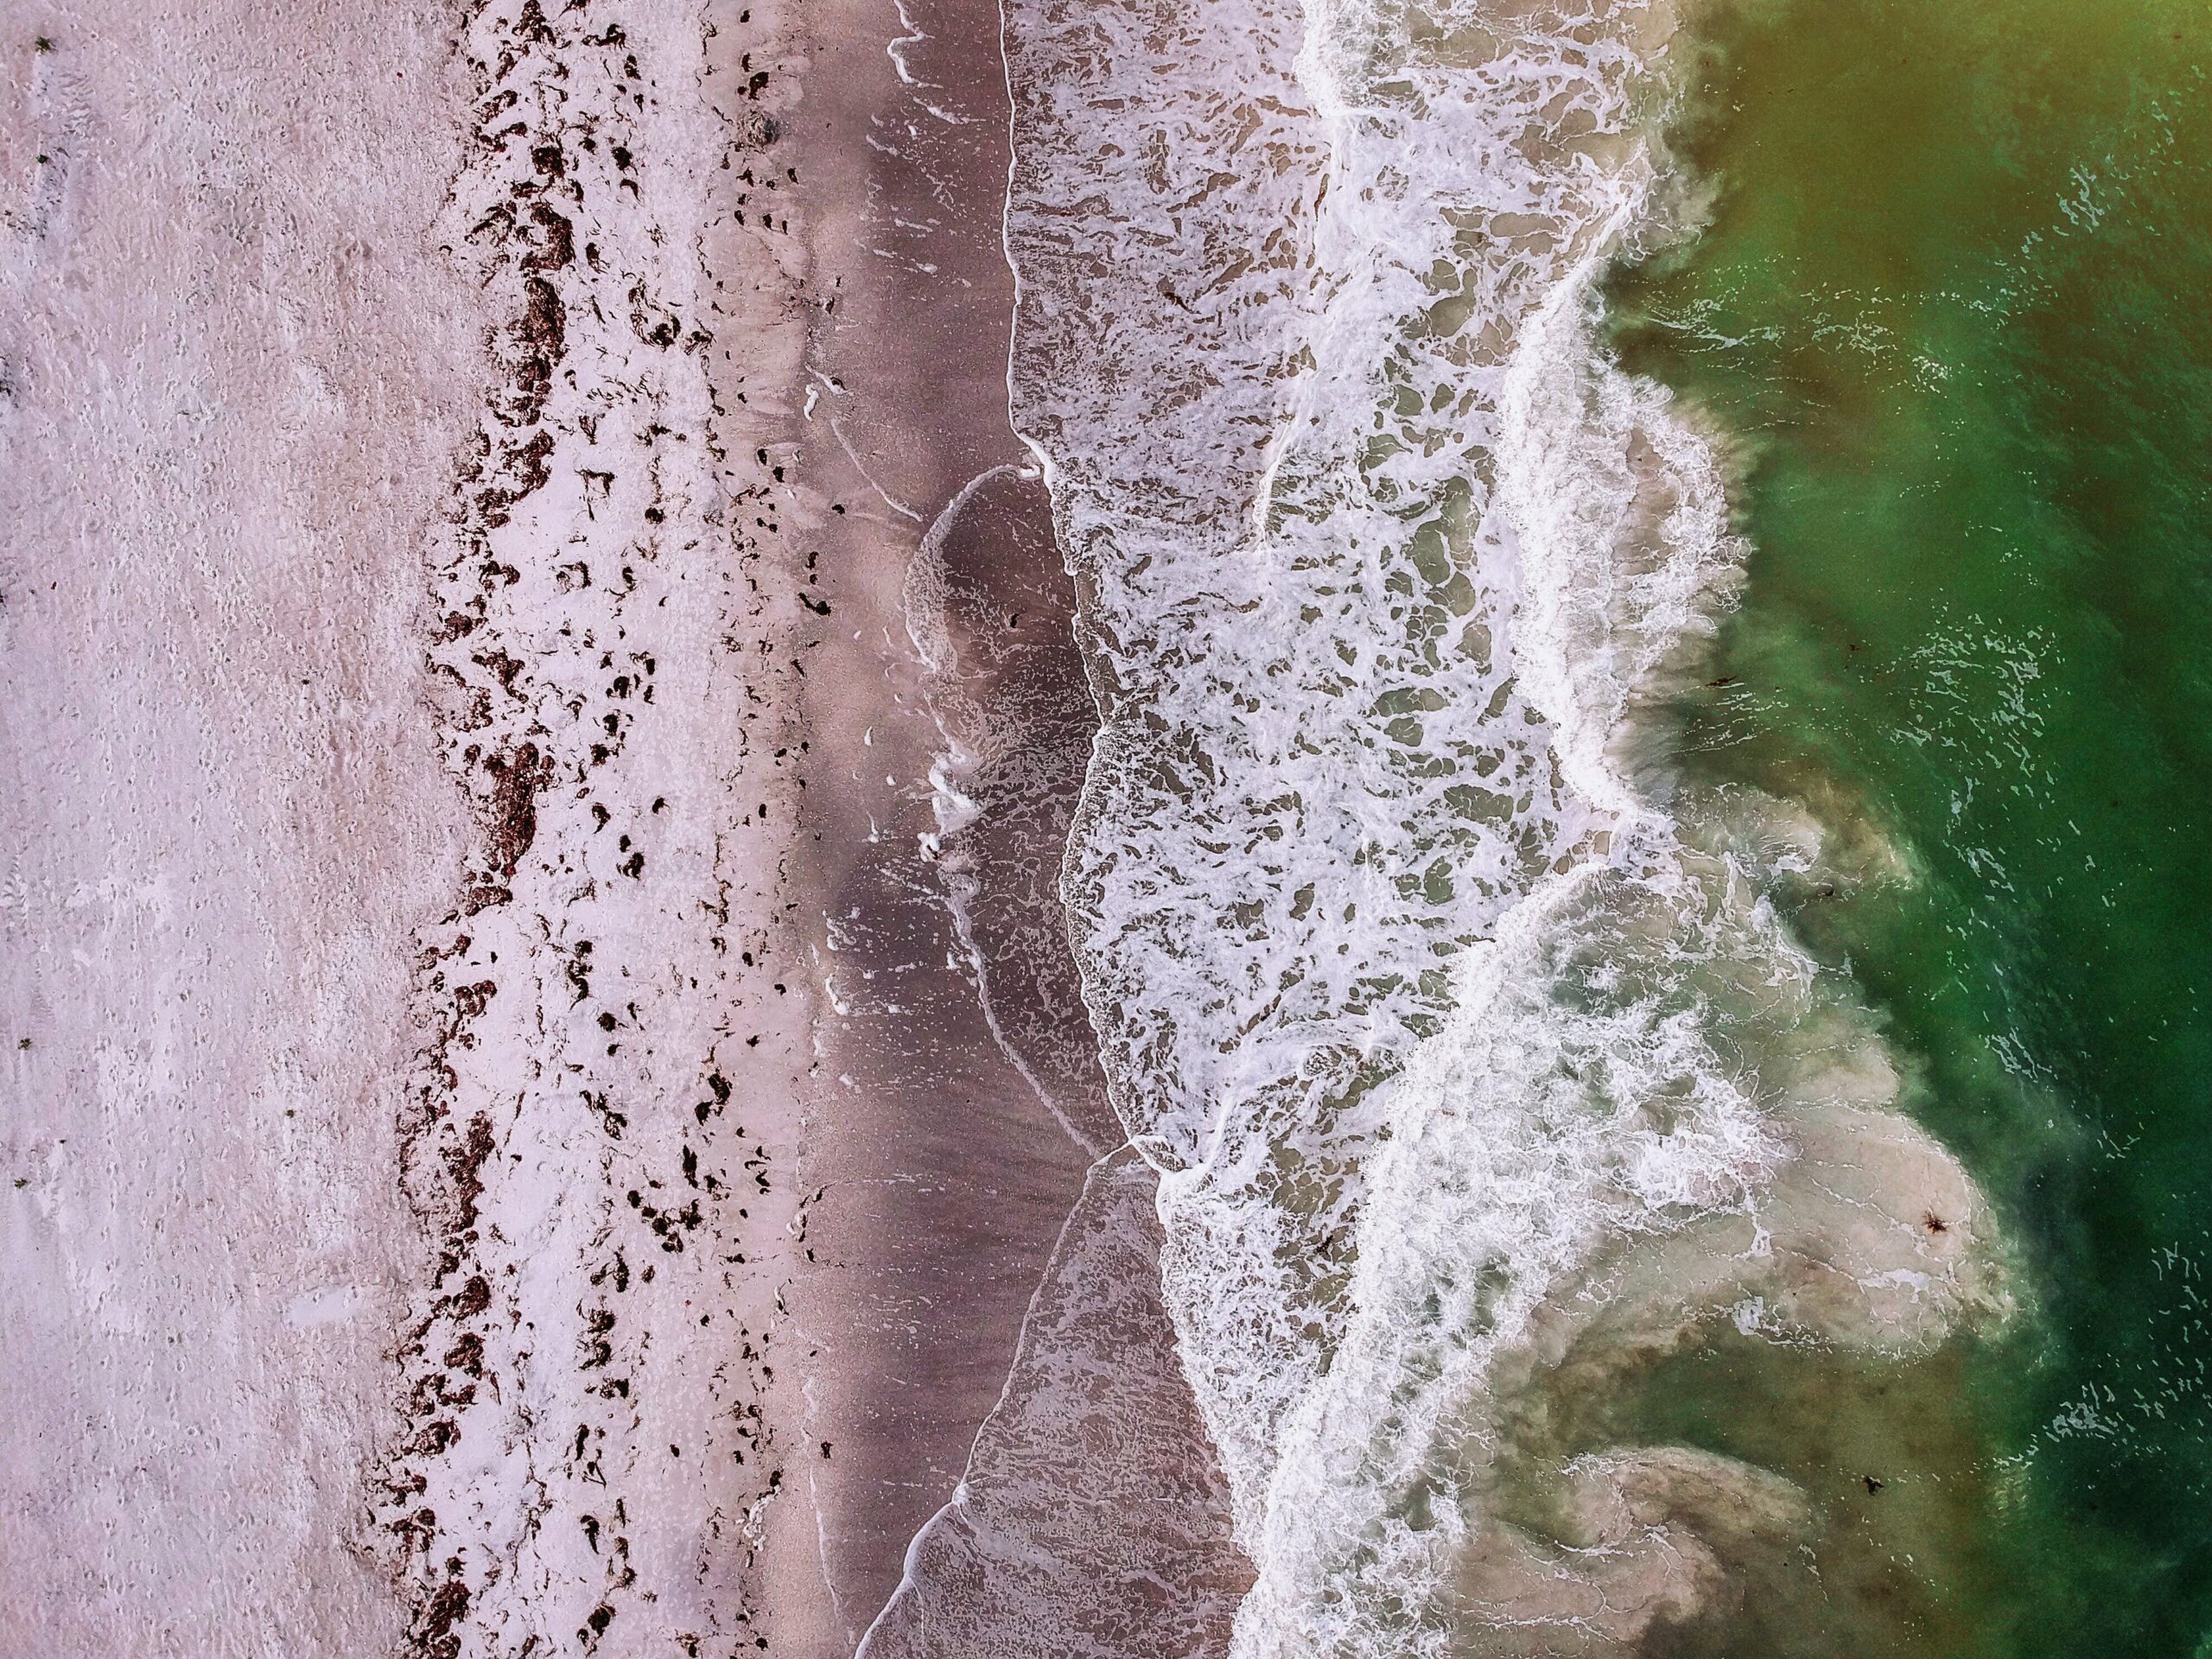 Aerial view of the green waters of Belleair Beach in Florida